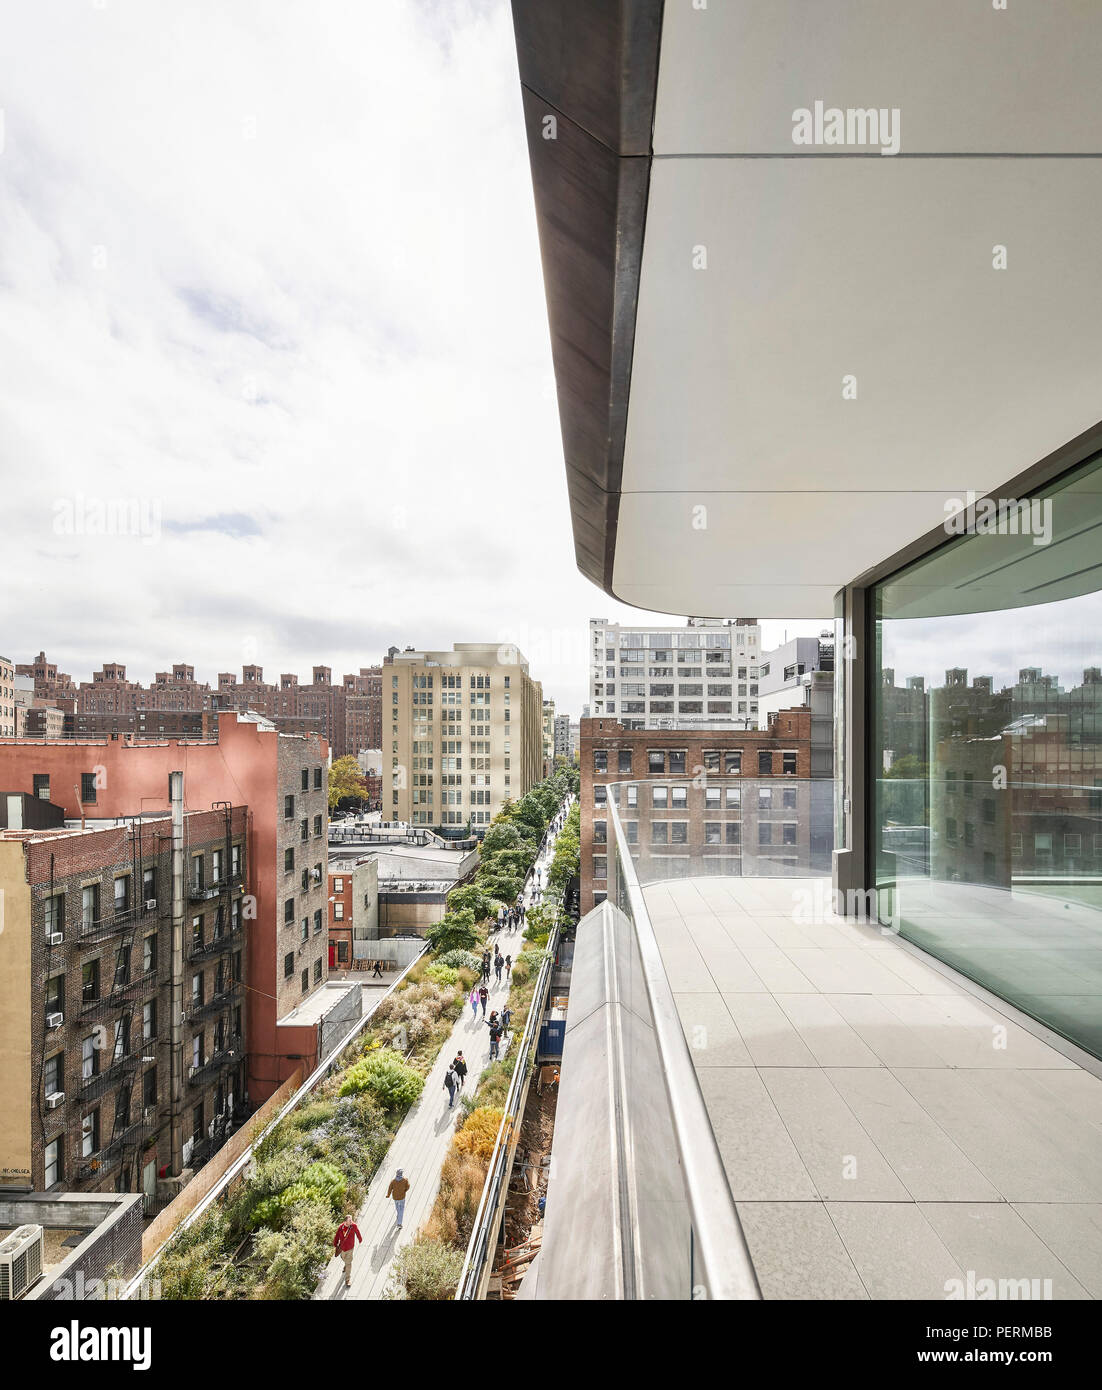 Détail de fenêtre avec vue sur la ligne haute. 520 West 28th Street, New York, United States. Architecte : Zaha Hadid Architects, 2017. Banque D'Images